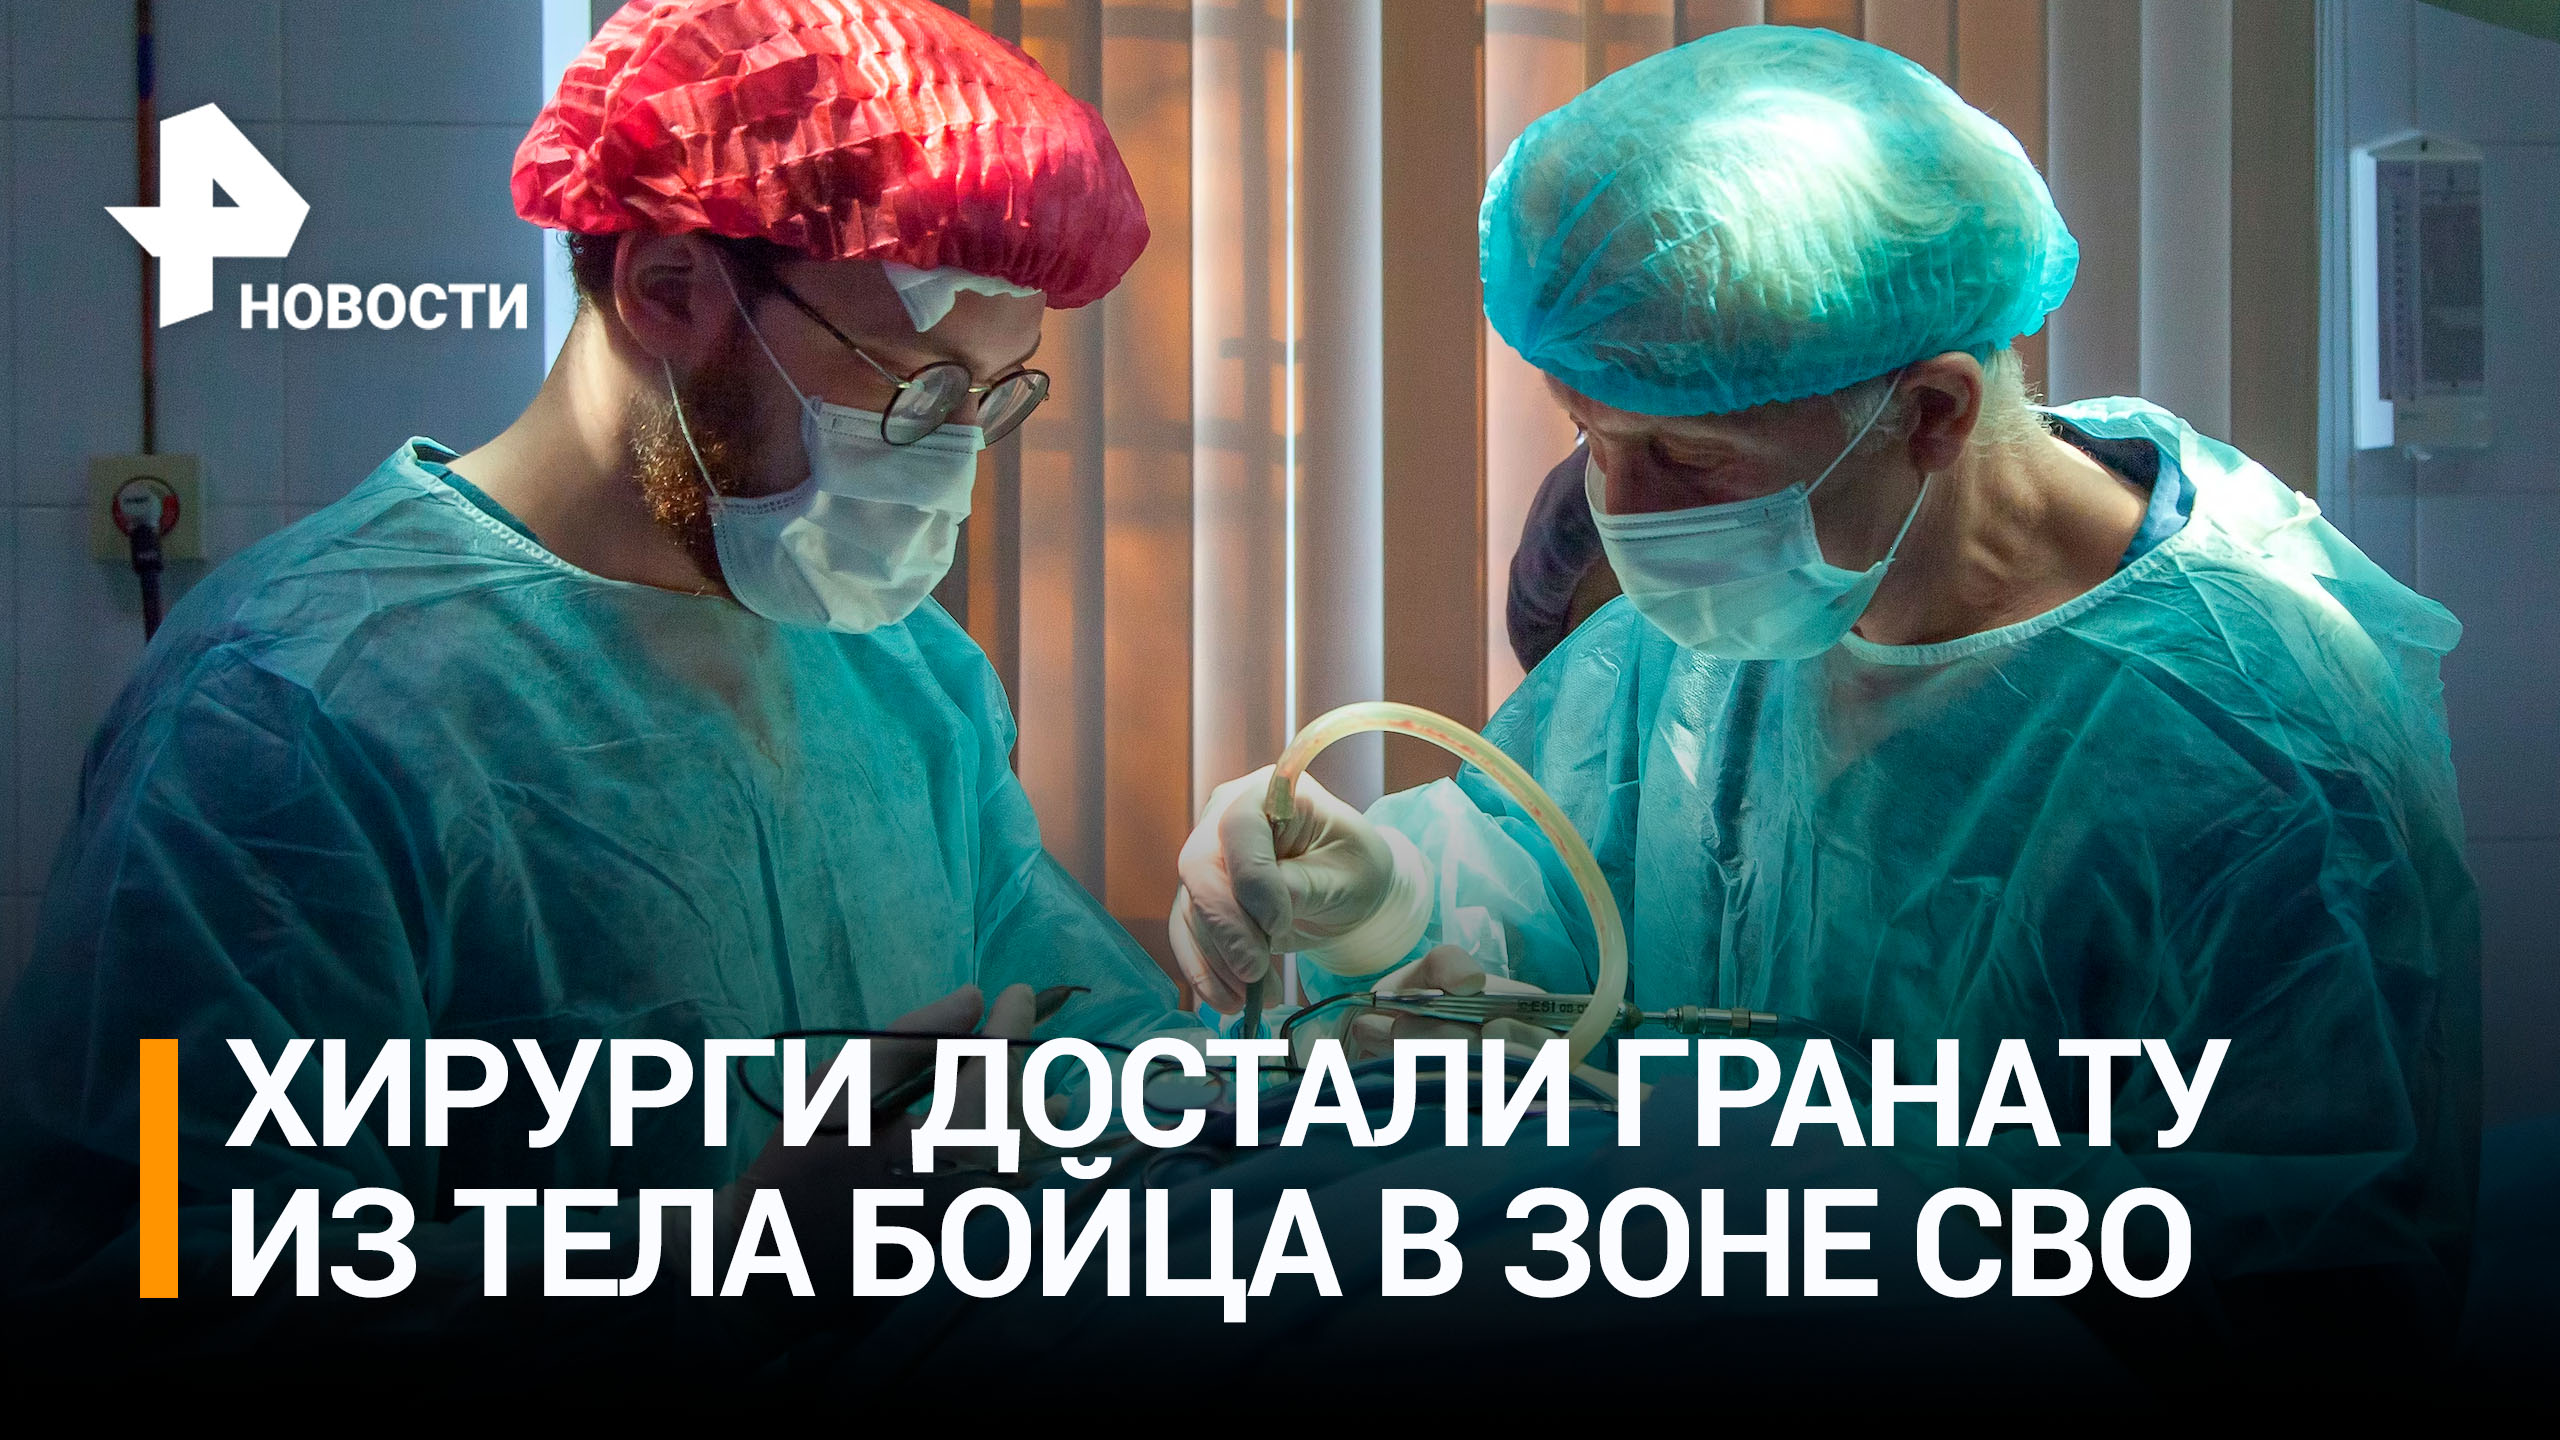 Операция в бронежилетах: врачи в зоне СВО извлекли взрыватель из тела раненого бойца / РЕН Новости